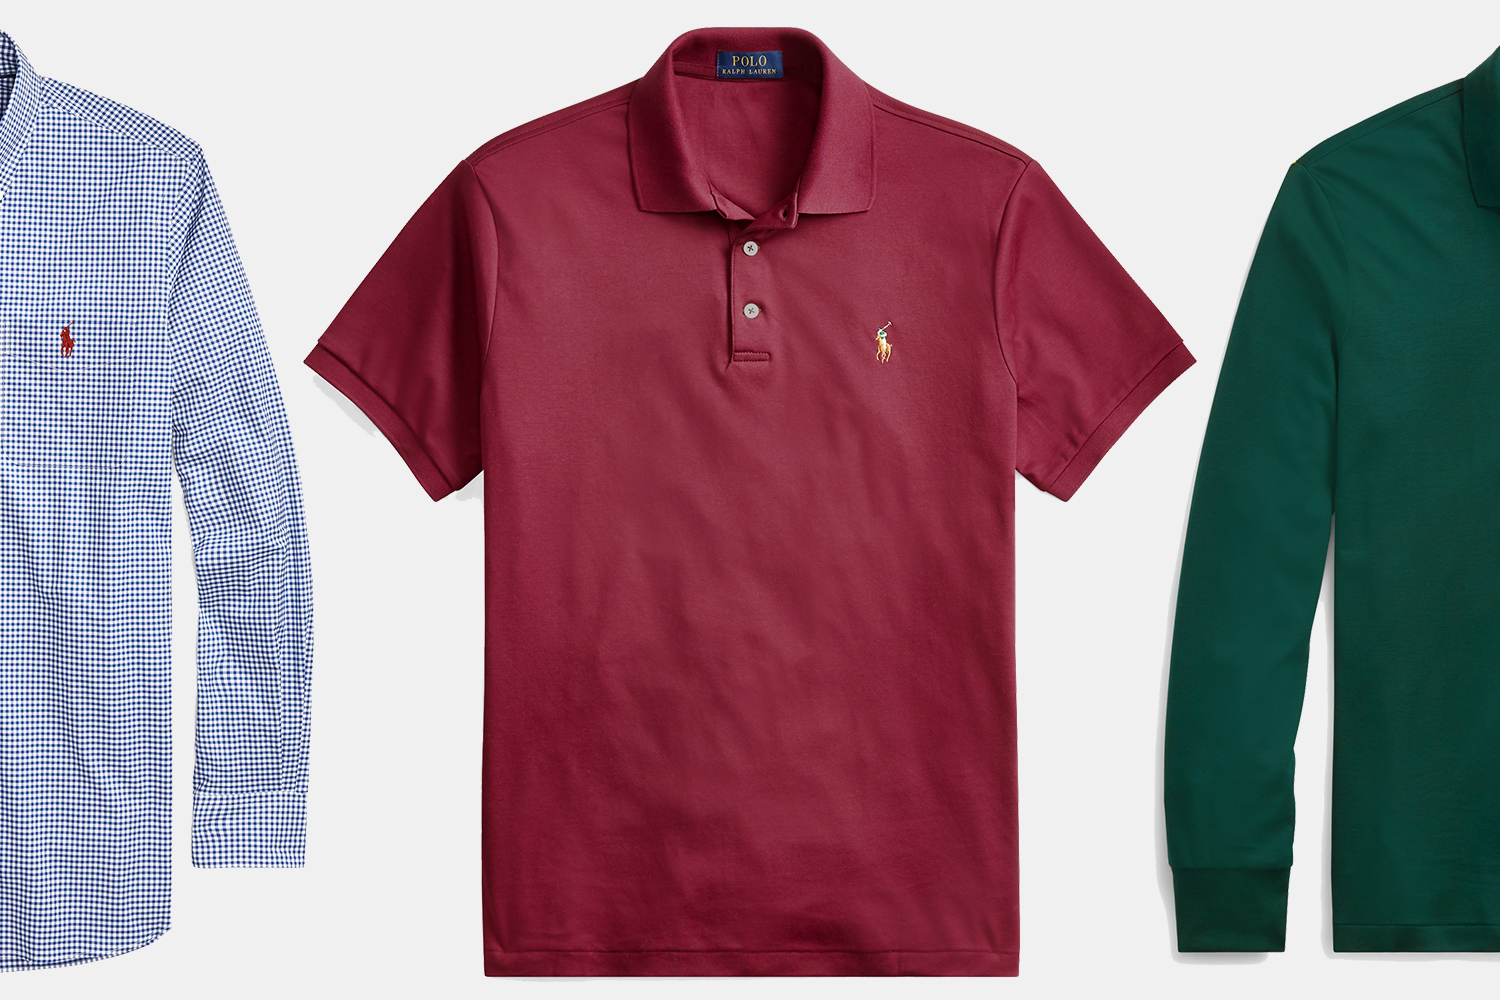 men's polo shirts sale ralph lauren